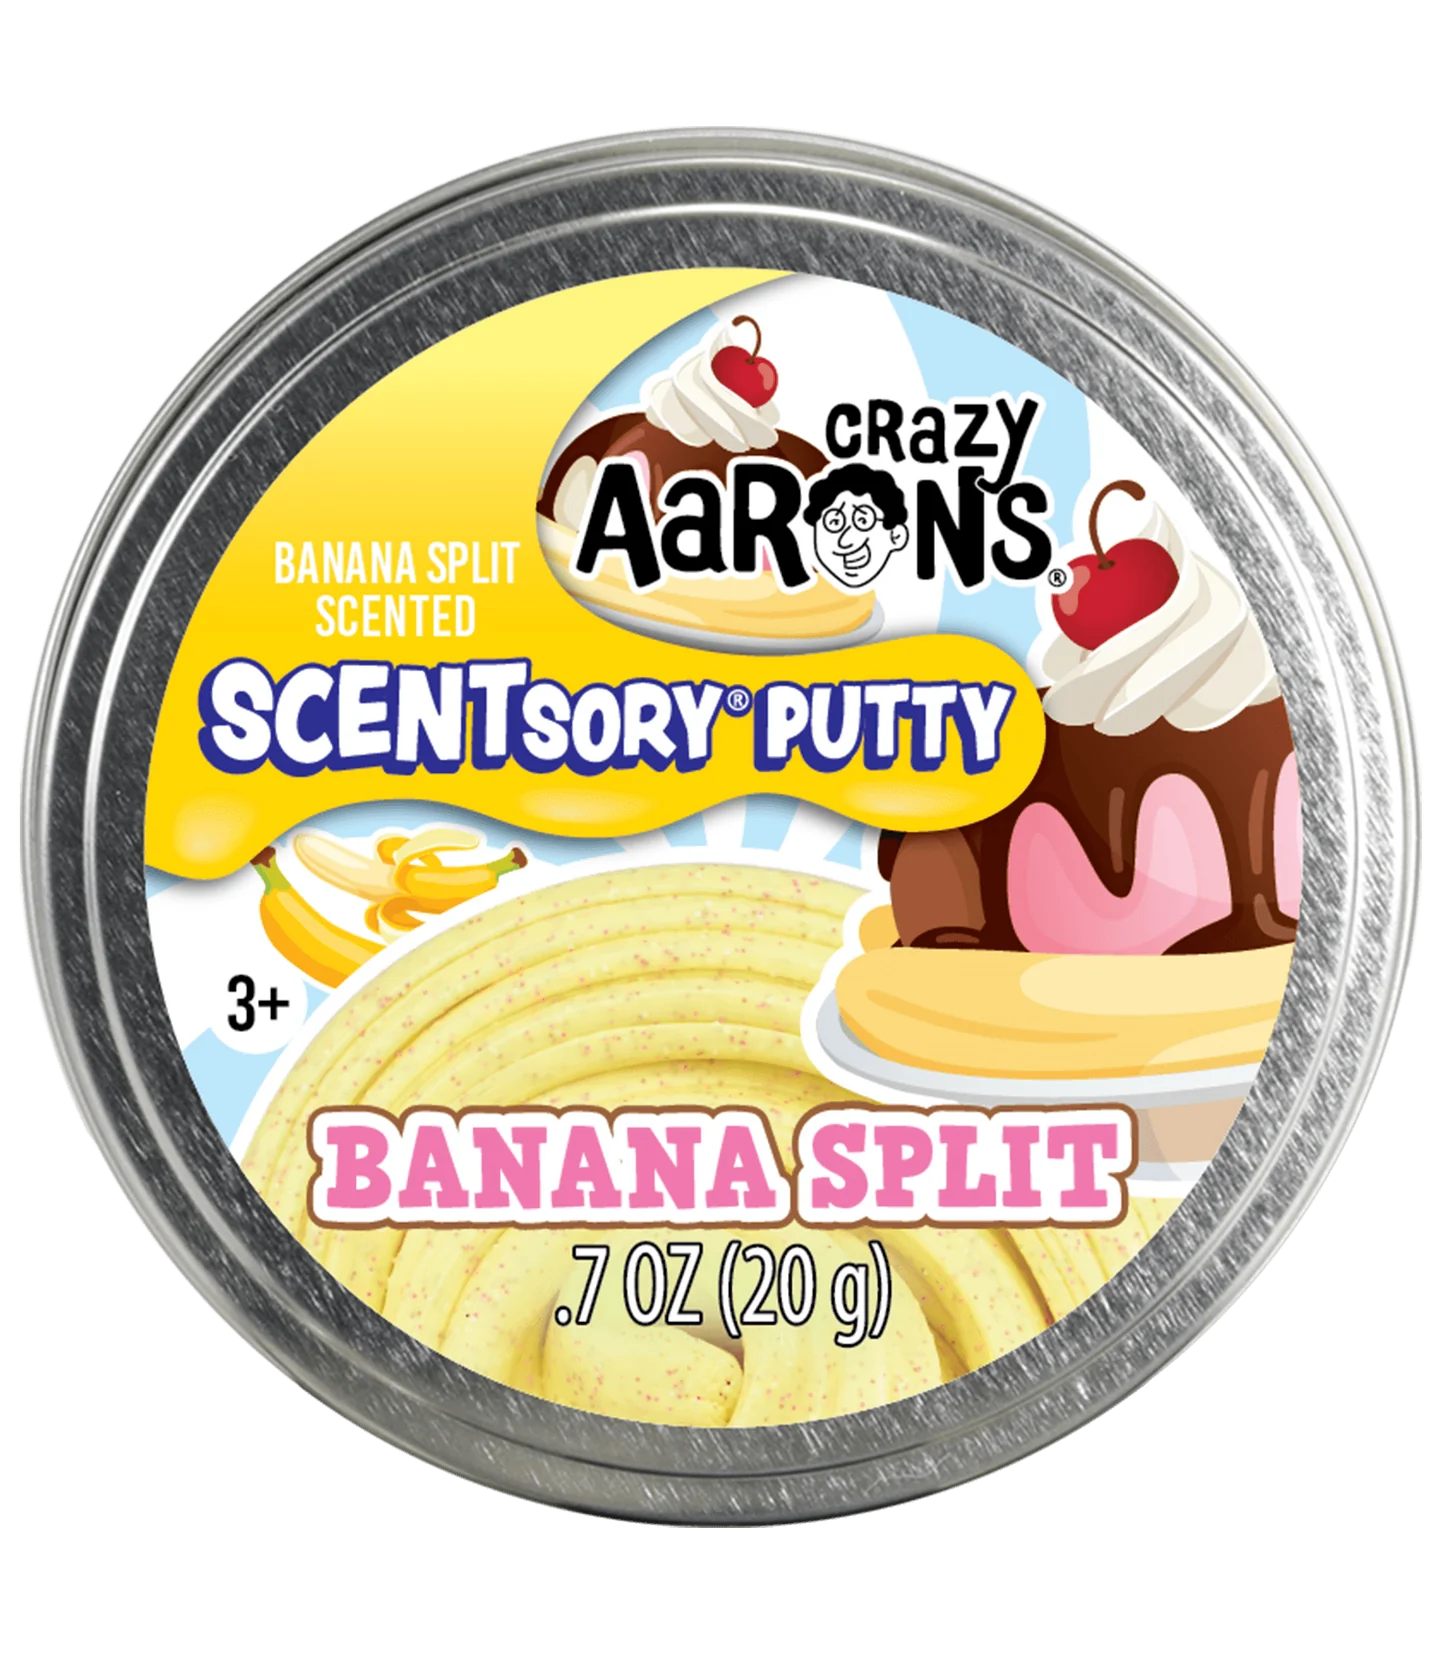 Crazy Aaron's Scentsory Putty - Banana Split